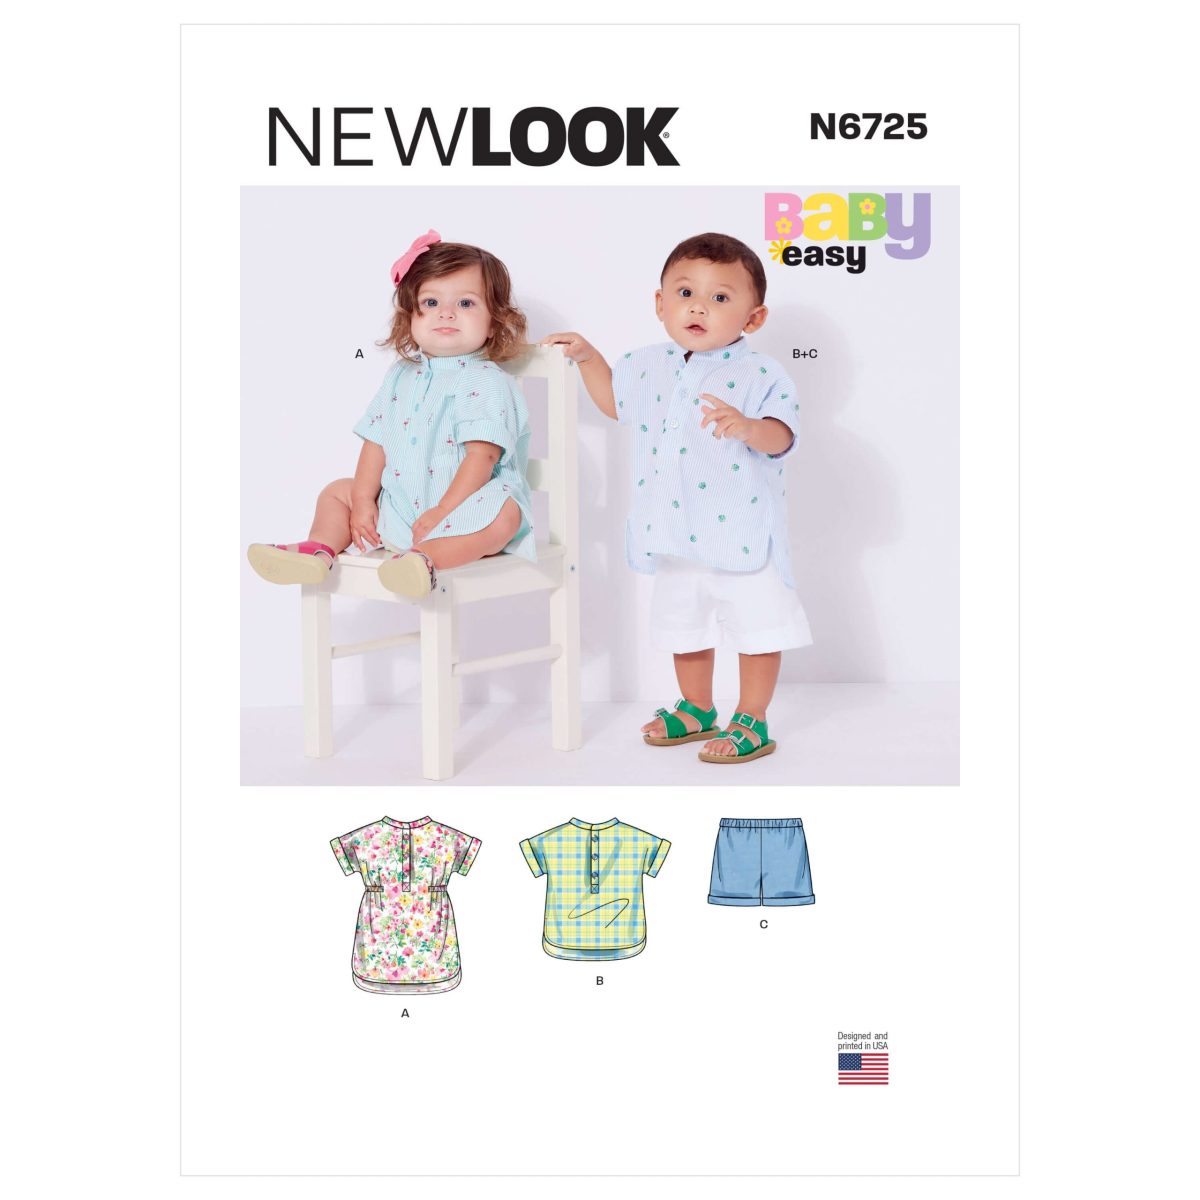 New Look Sewing Pattern N6725 Babies' Separates